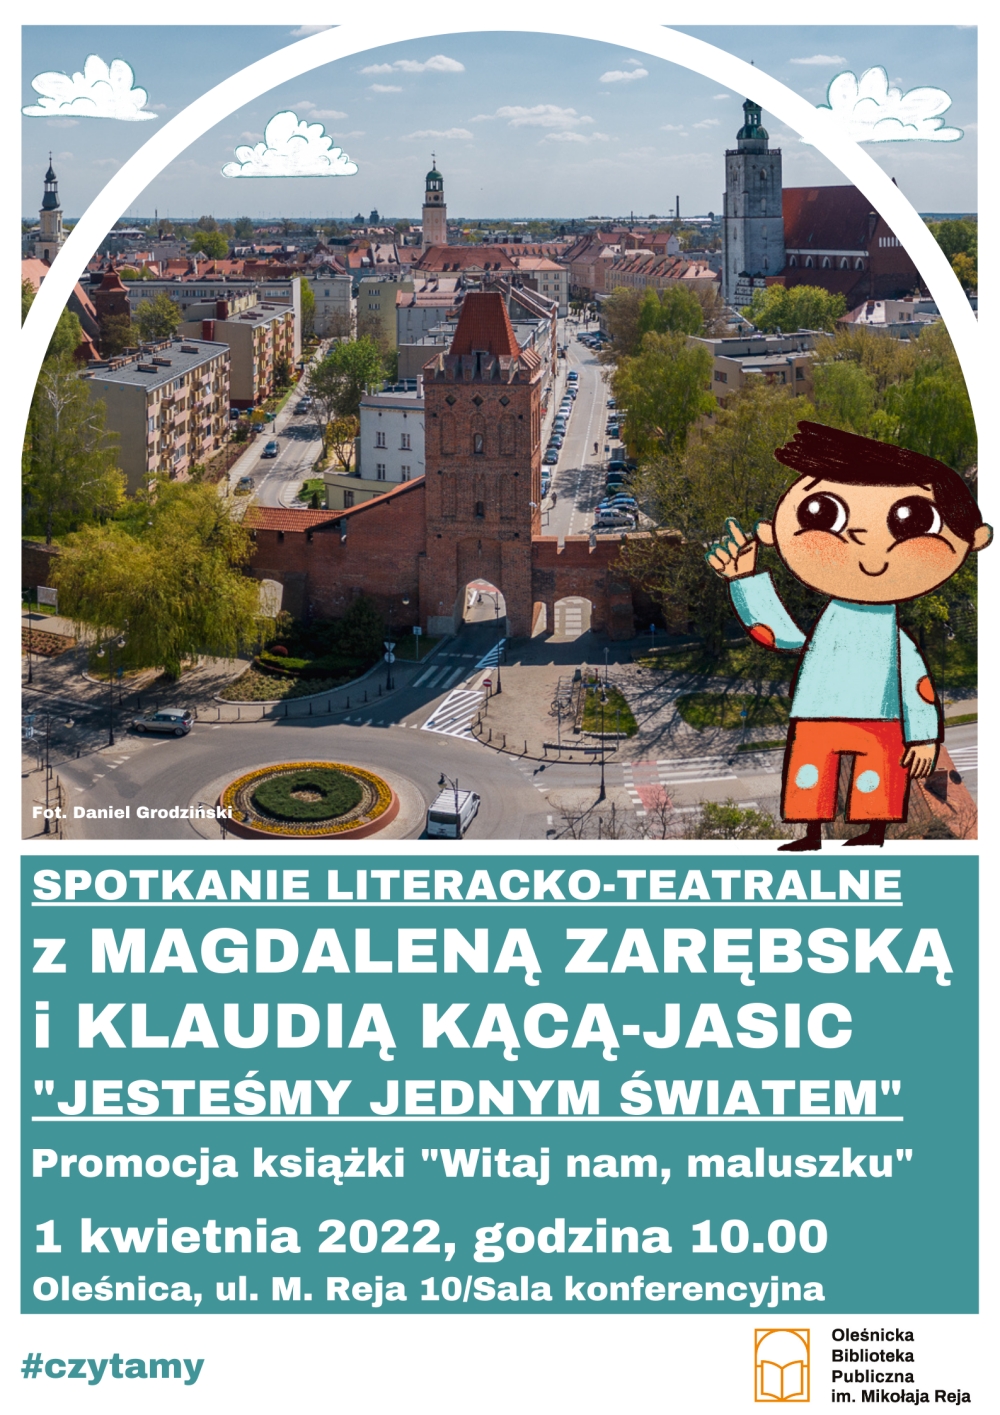 Plakat promujący kwietniowe spotkanie literacko-teatralne w oleśnickiej bibliotece